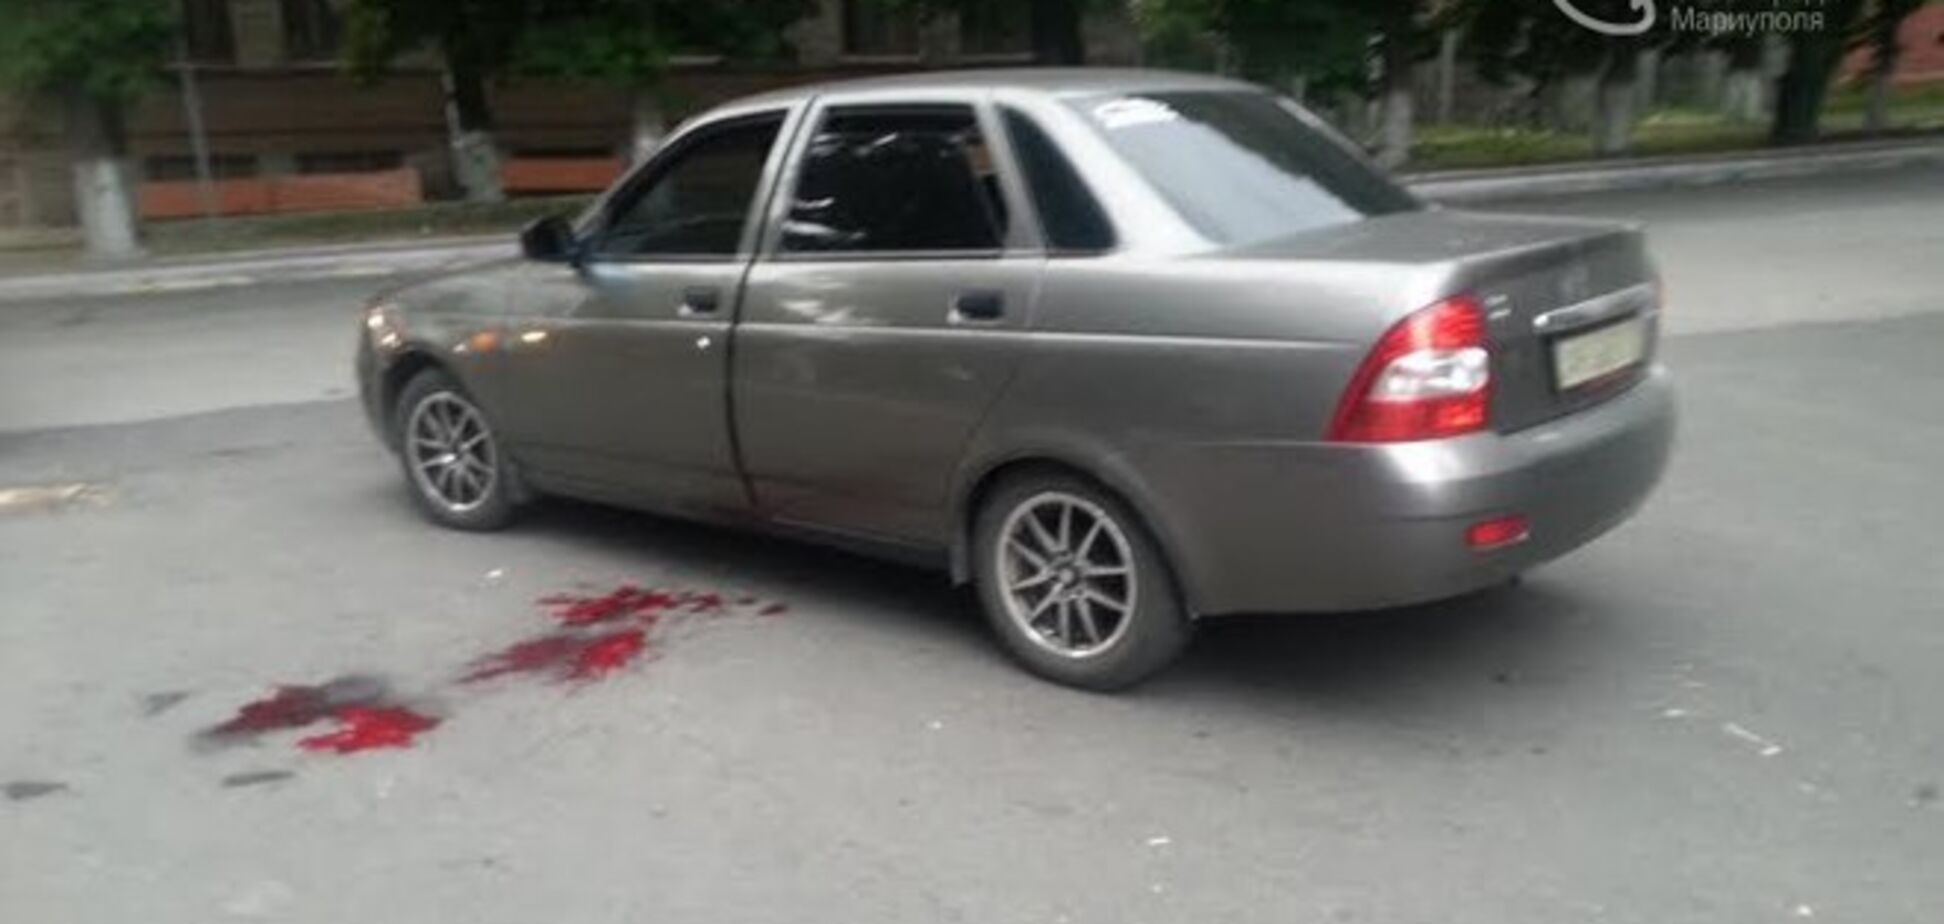 В центре Мариуполя неизвестные обстреляли авто: водителю выстрелили в спину